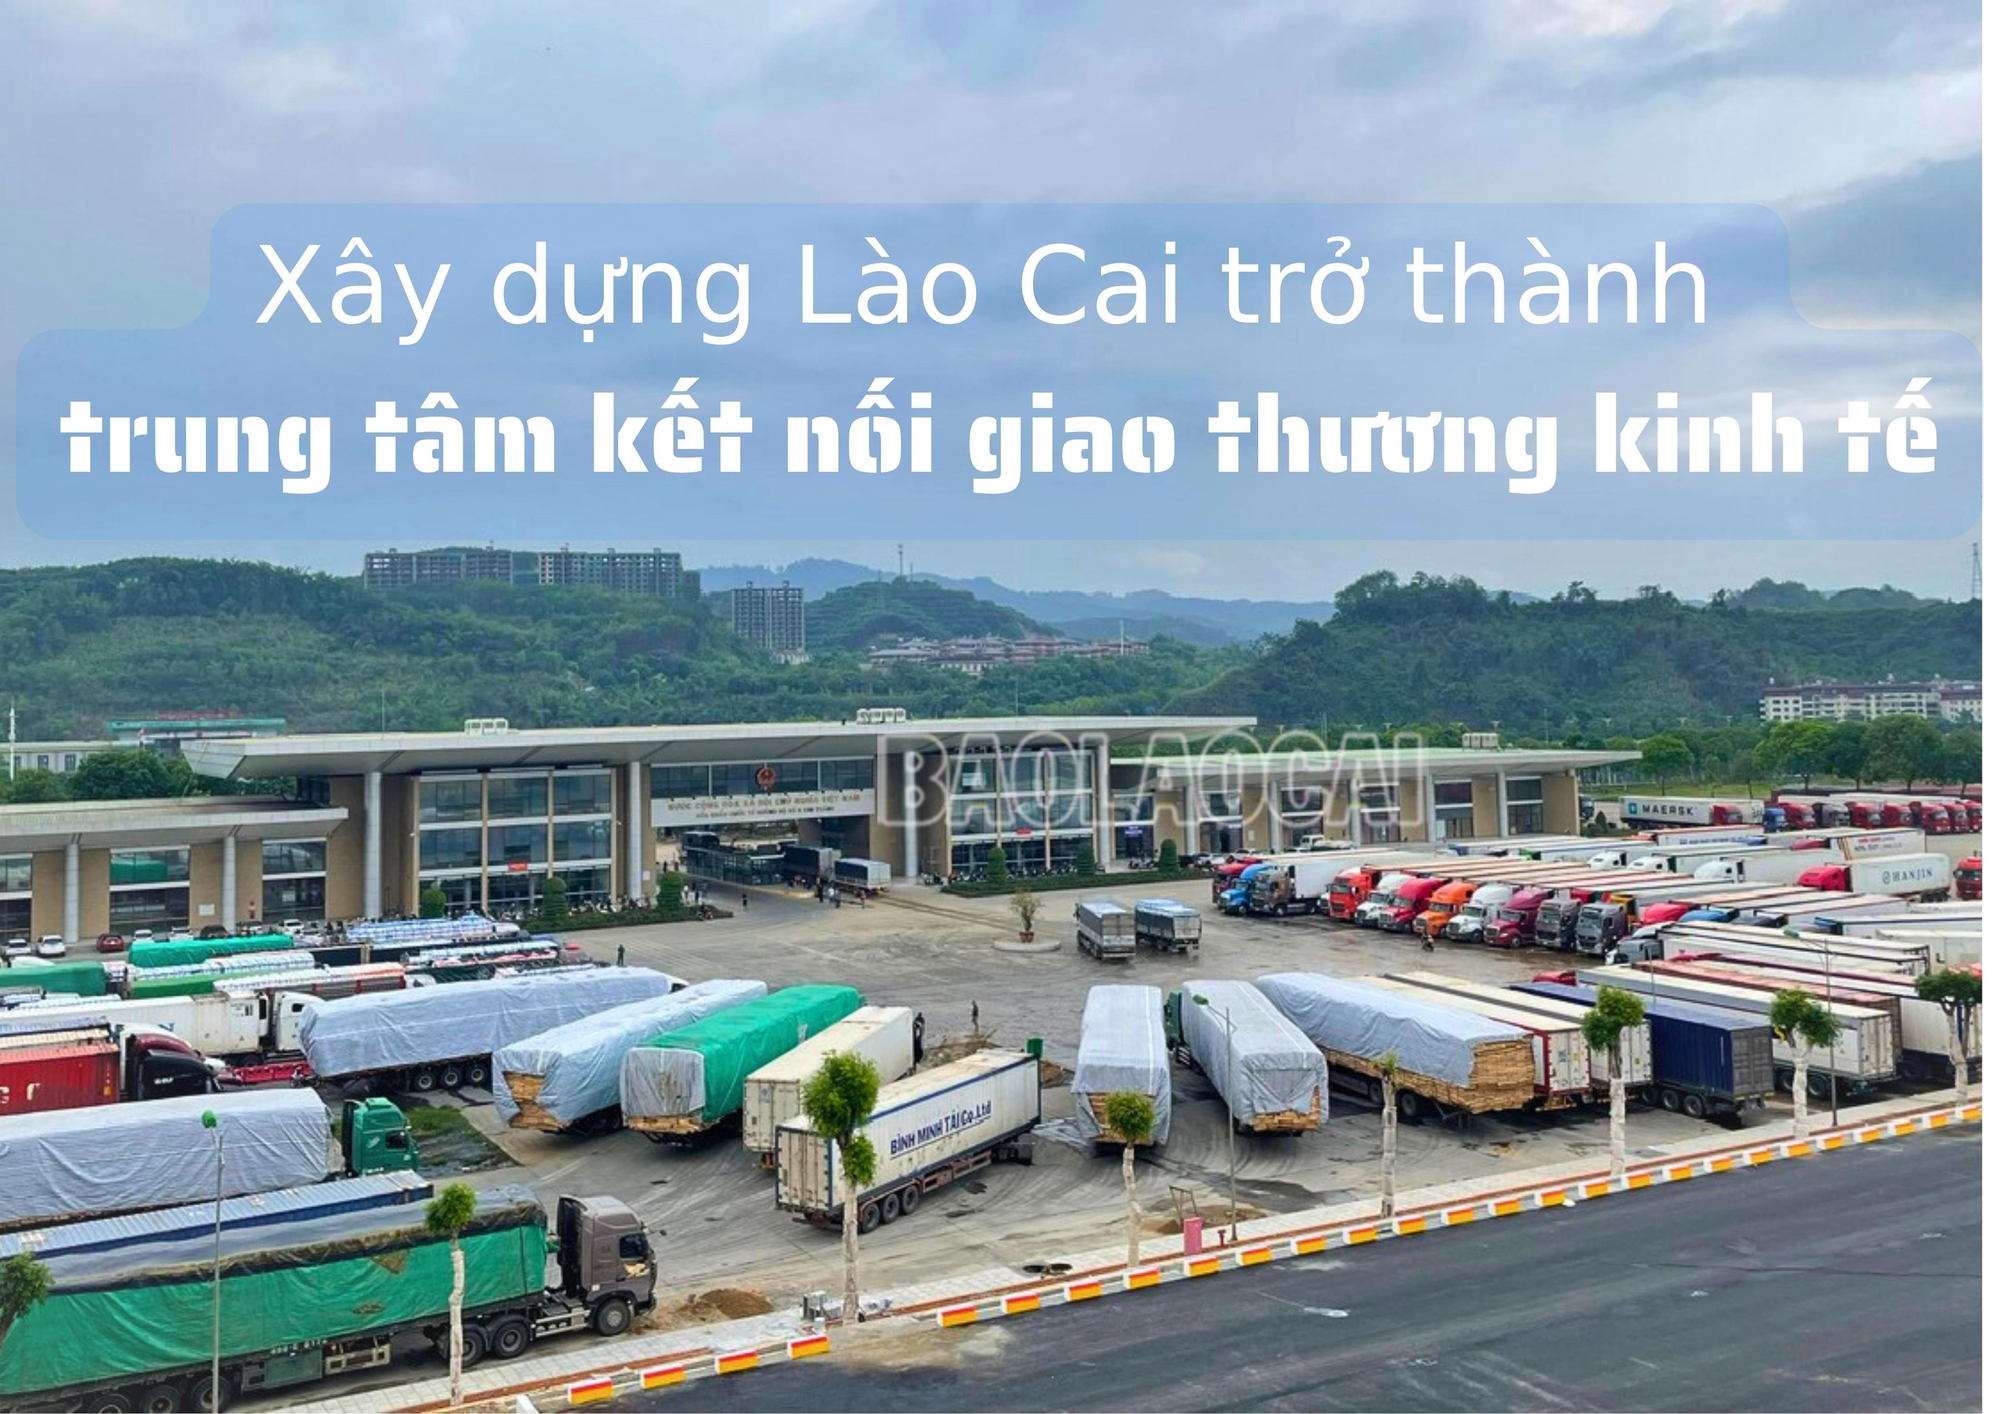 Xây dựng Lào Cai trở thành trung tâm kết nối giao thương kinh tế